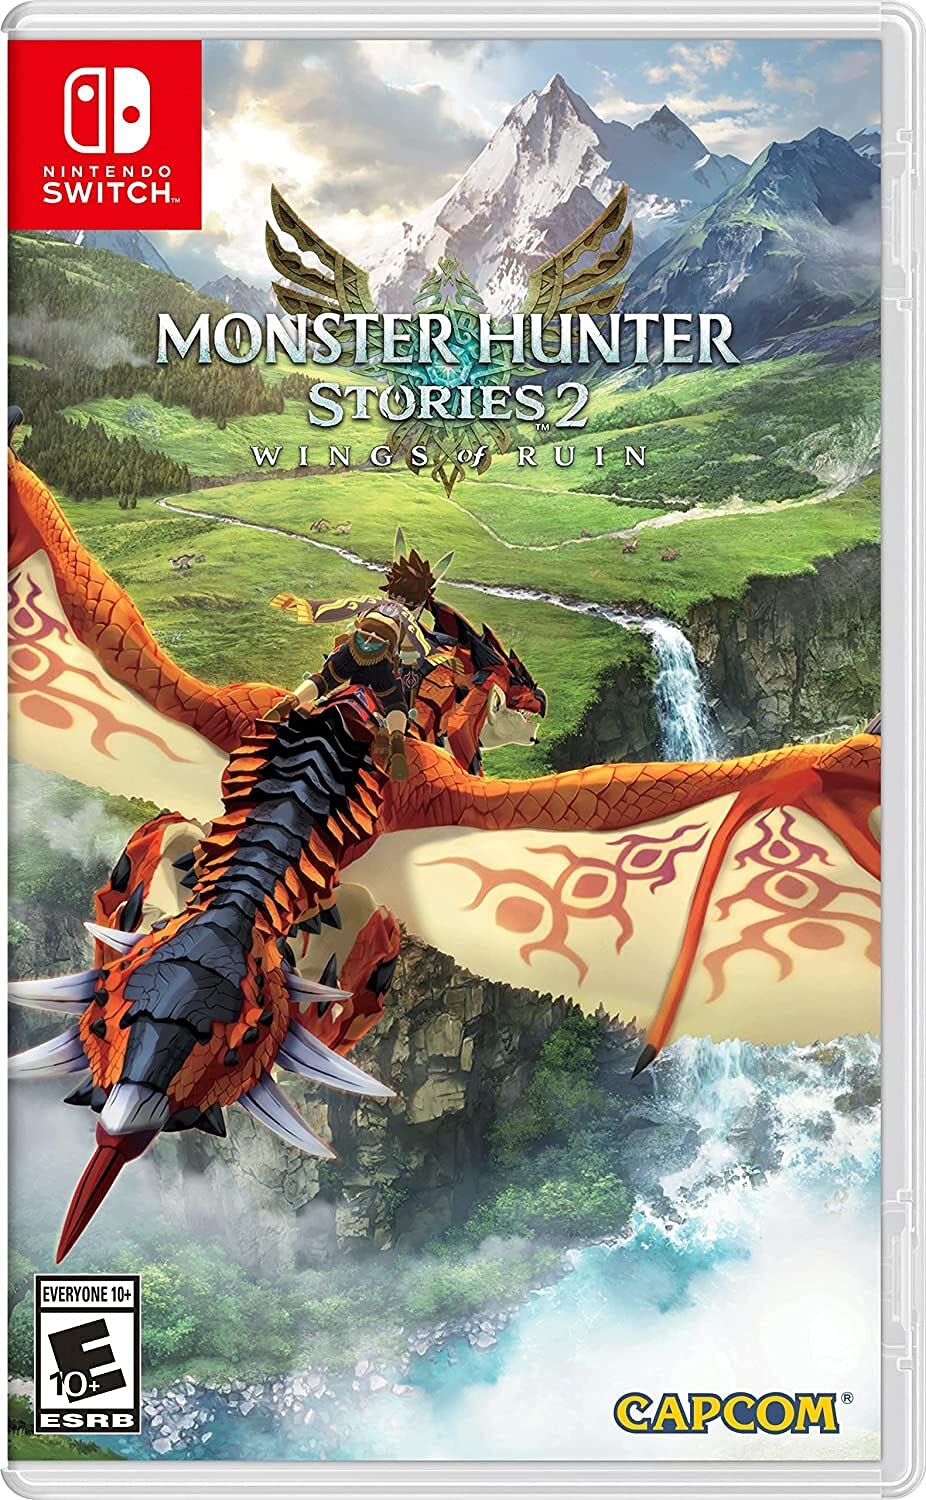 Monster Hunter - Metacritic